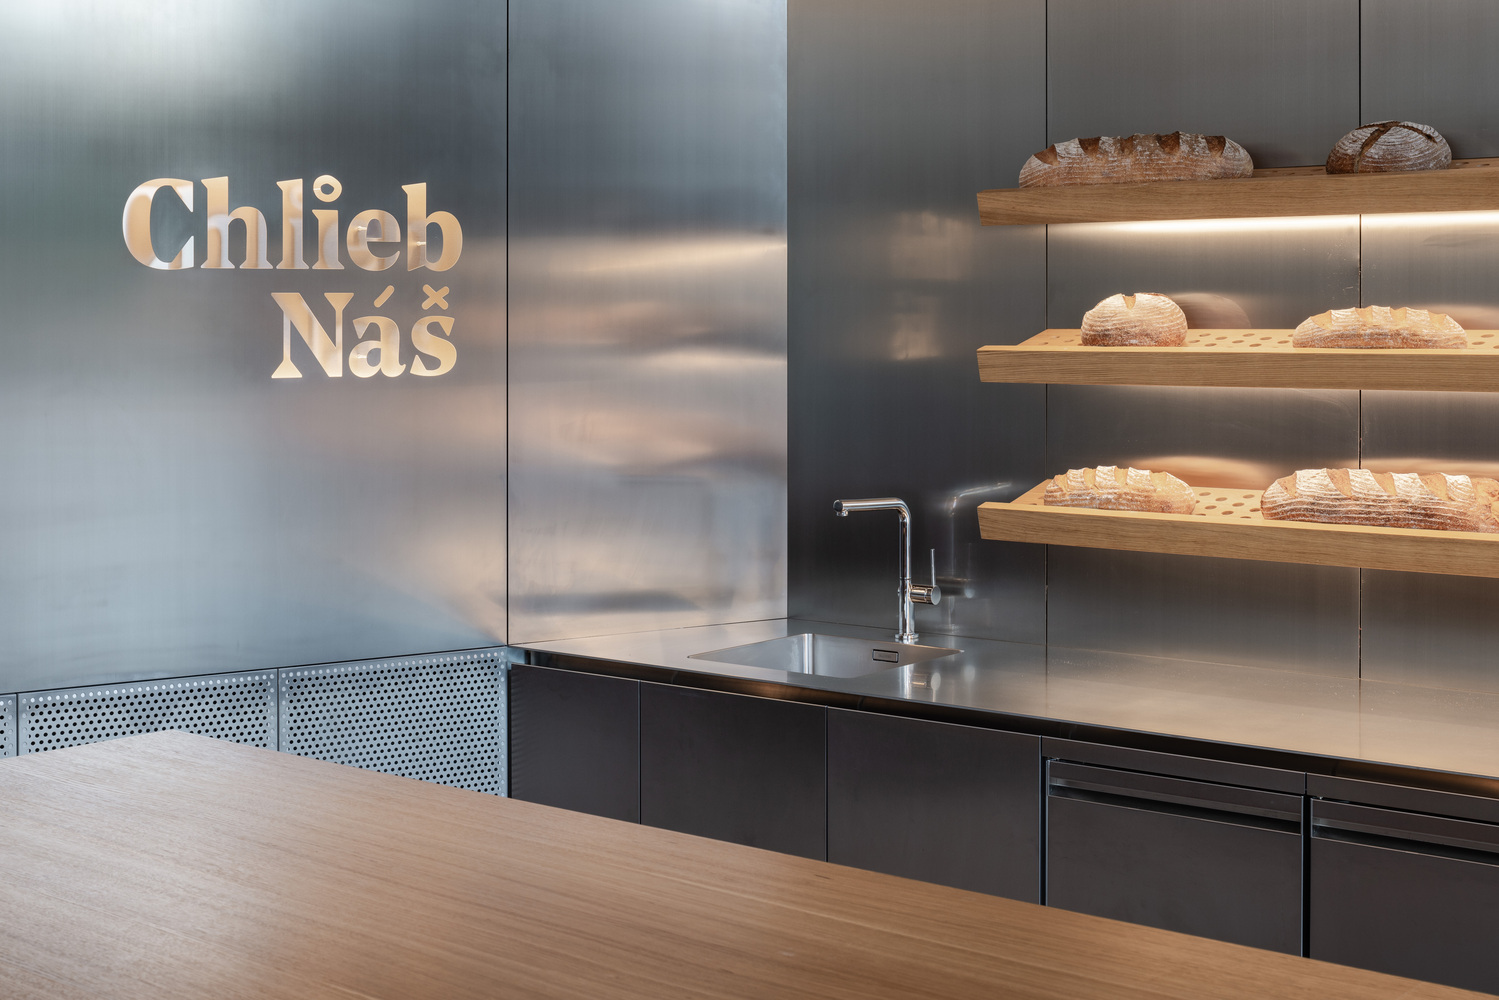 斯洛伐克,Sadovsky & Architects,咖啡厅设计案例,面包店,极简主义,面包店设计,Chlieb Náš面包店